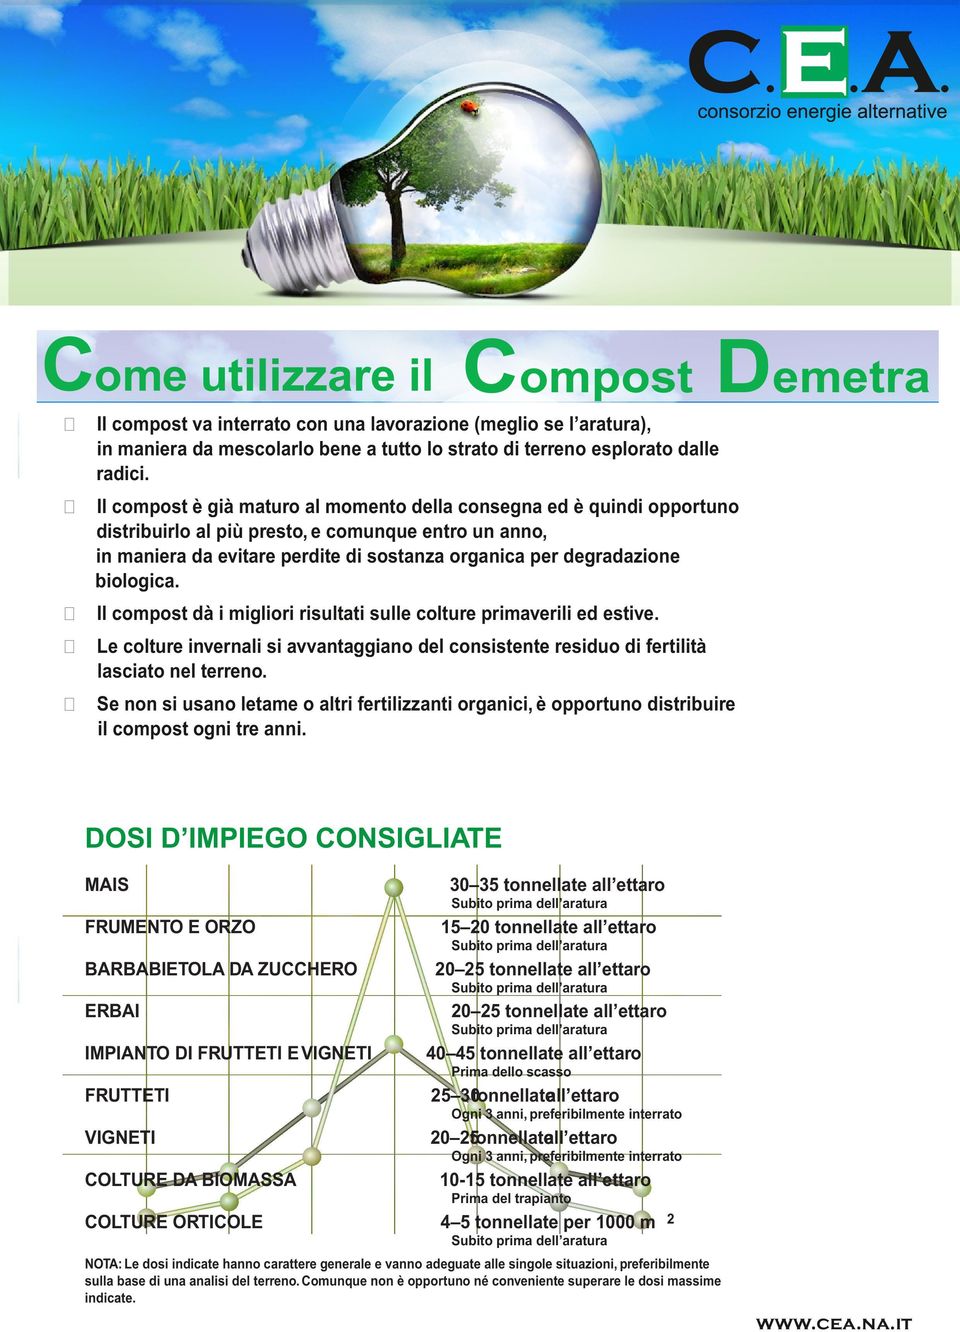 Il compost dà i migliori risultati sull coltur primavrili d stiv. L coltur invrnali si avvantaggiano dl consistnt rsiduo di frtilità lasciato nl trrno.